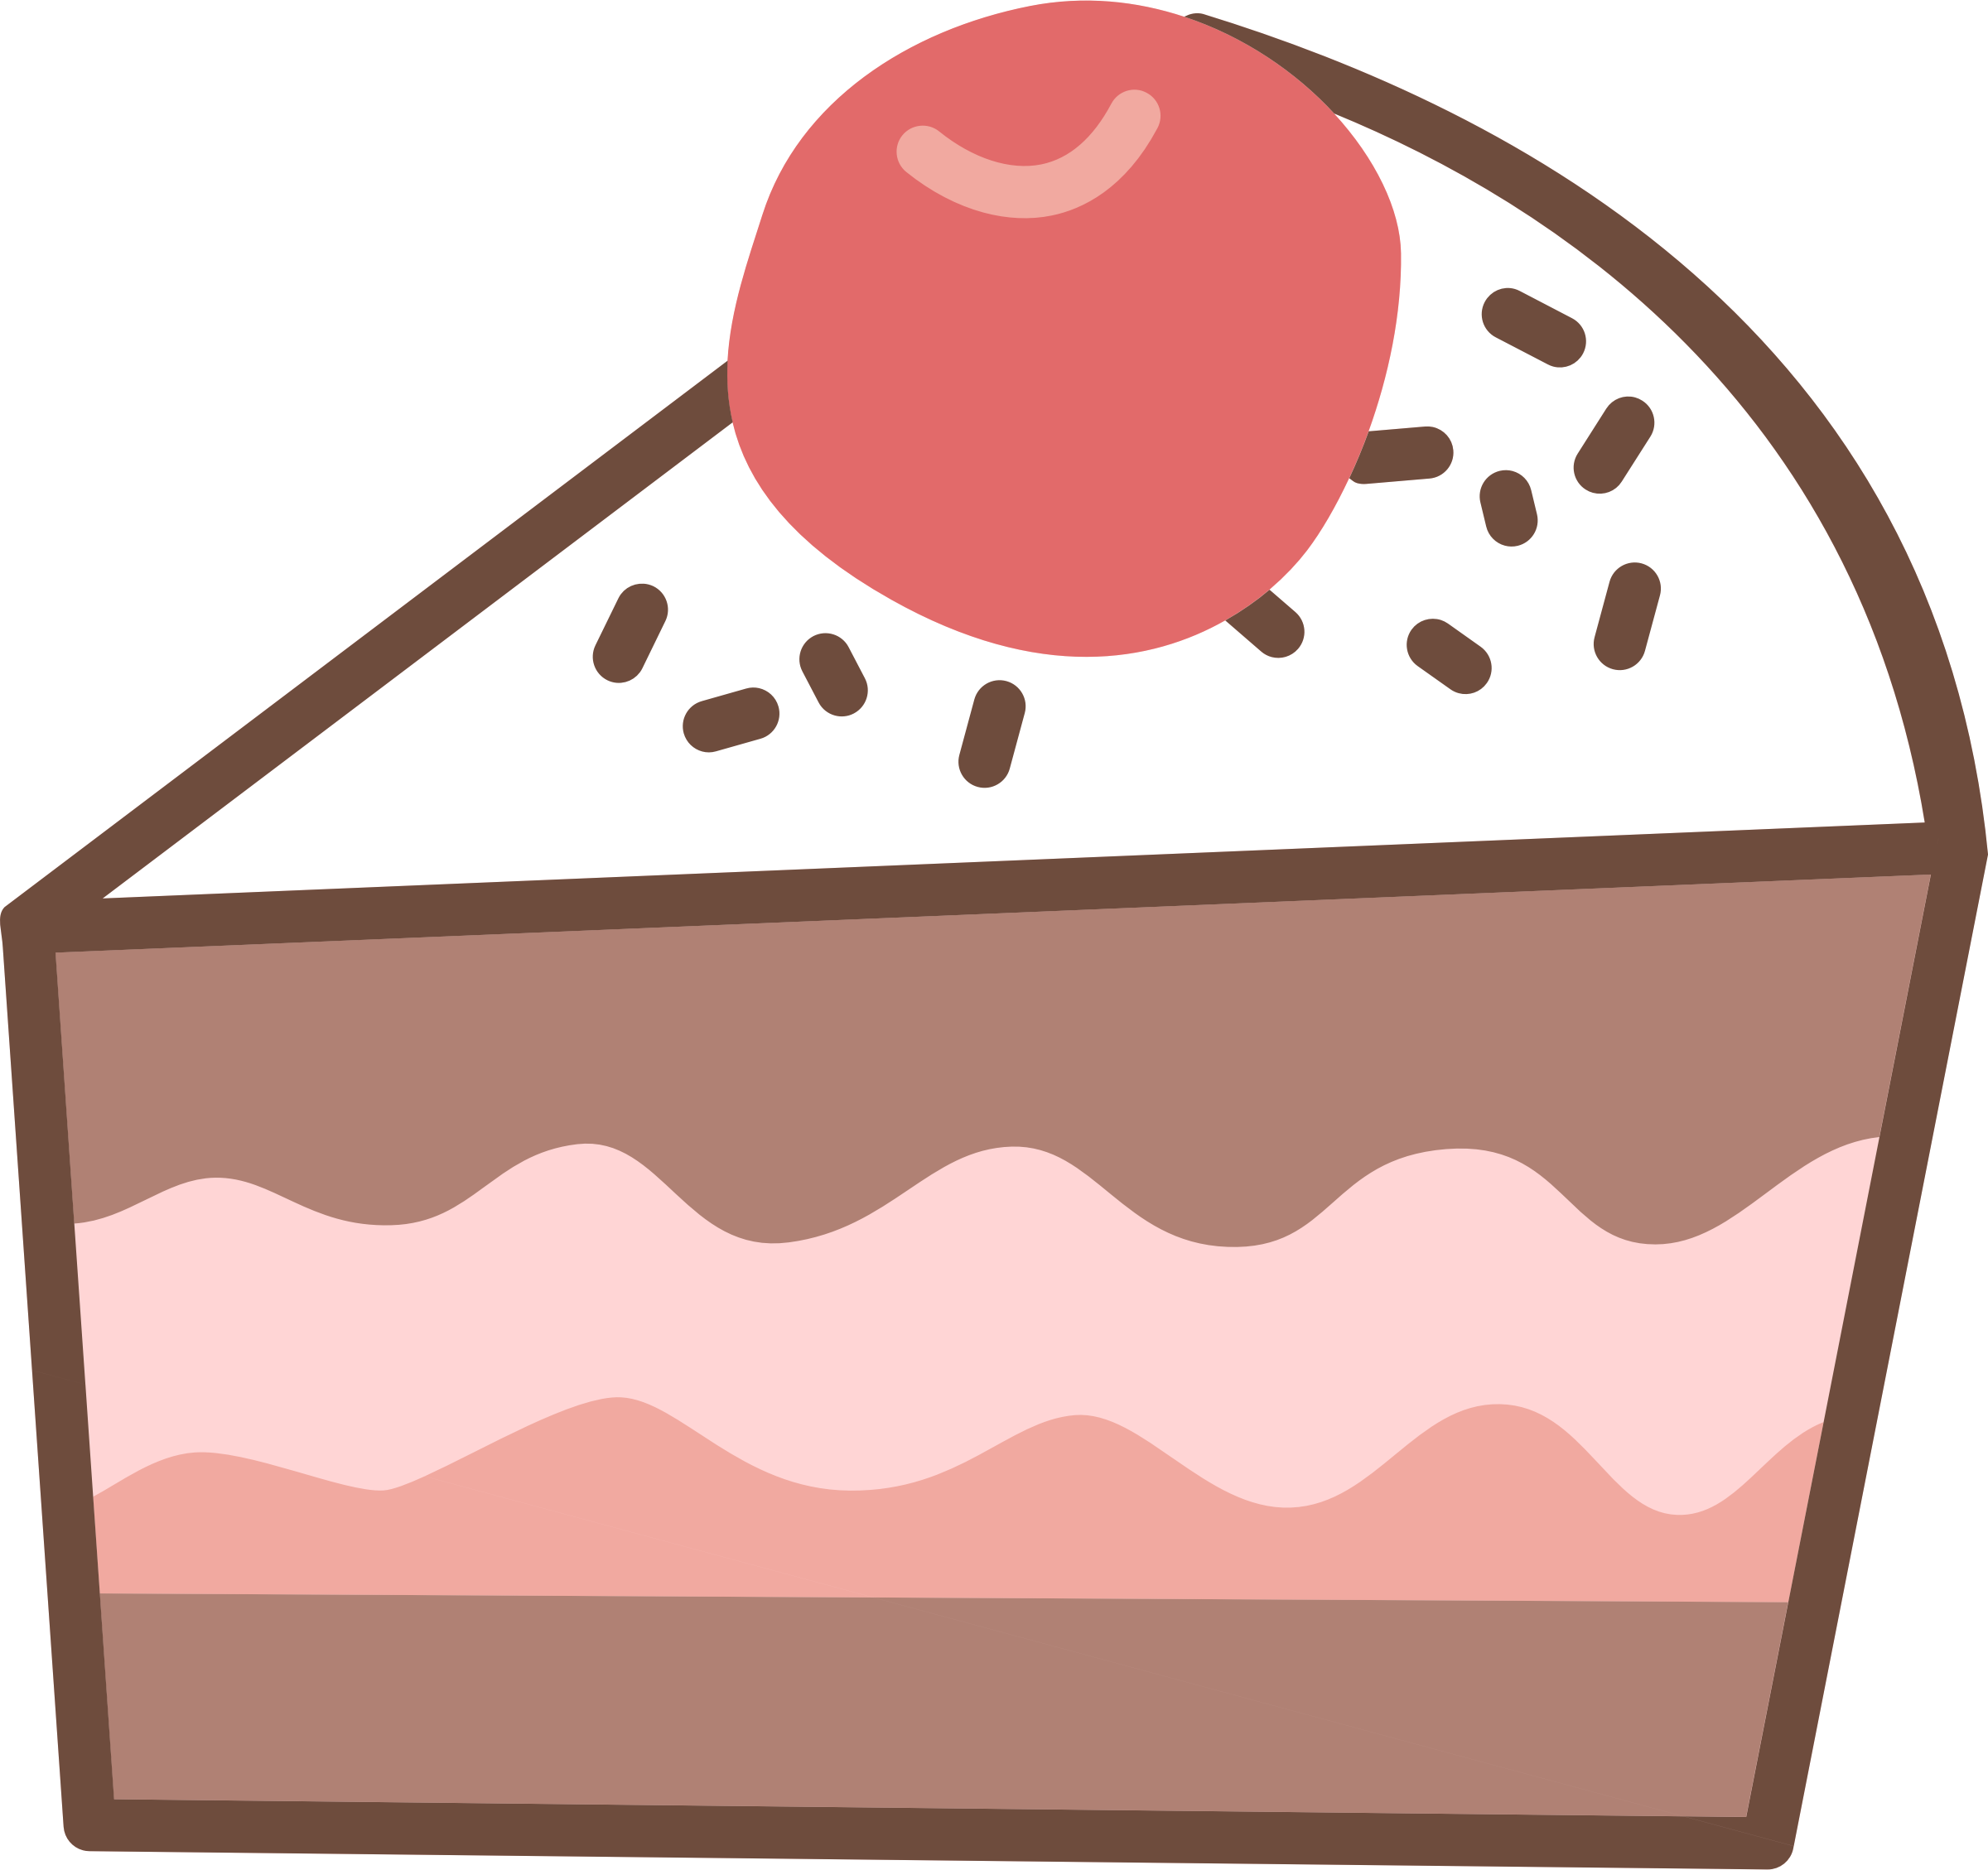 Chocolate Cake Birthday Cake Sweetness - Birthday Cake (2400x2258)